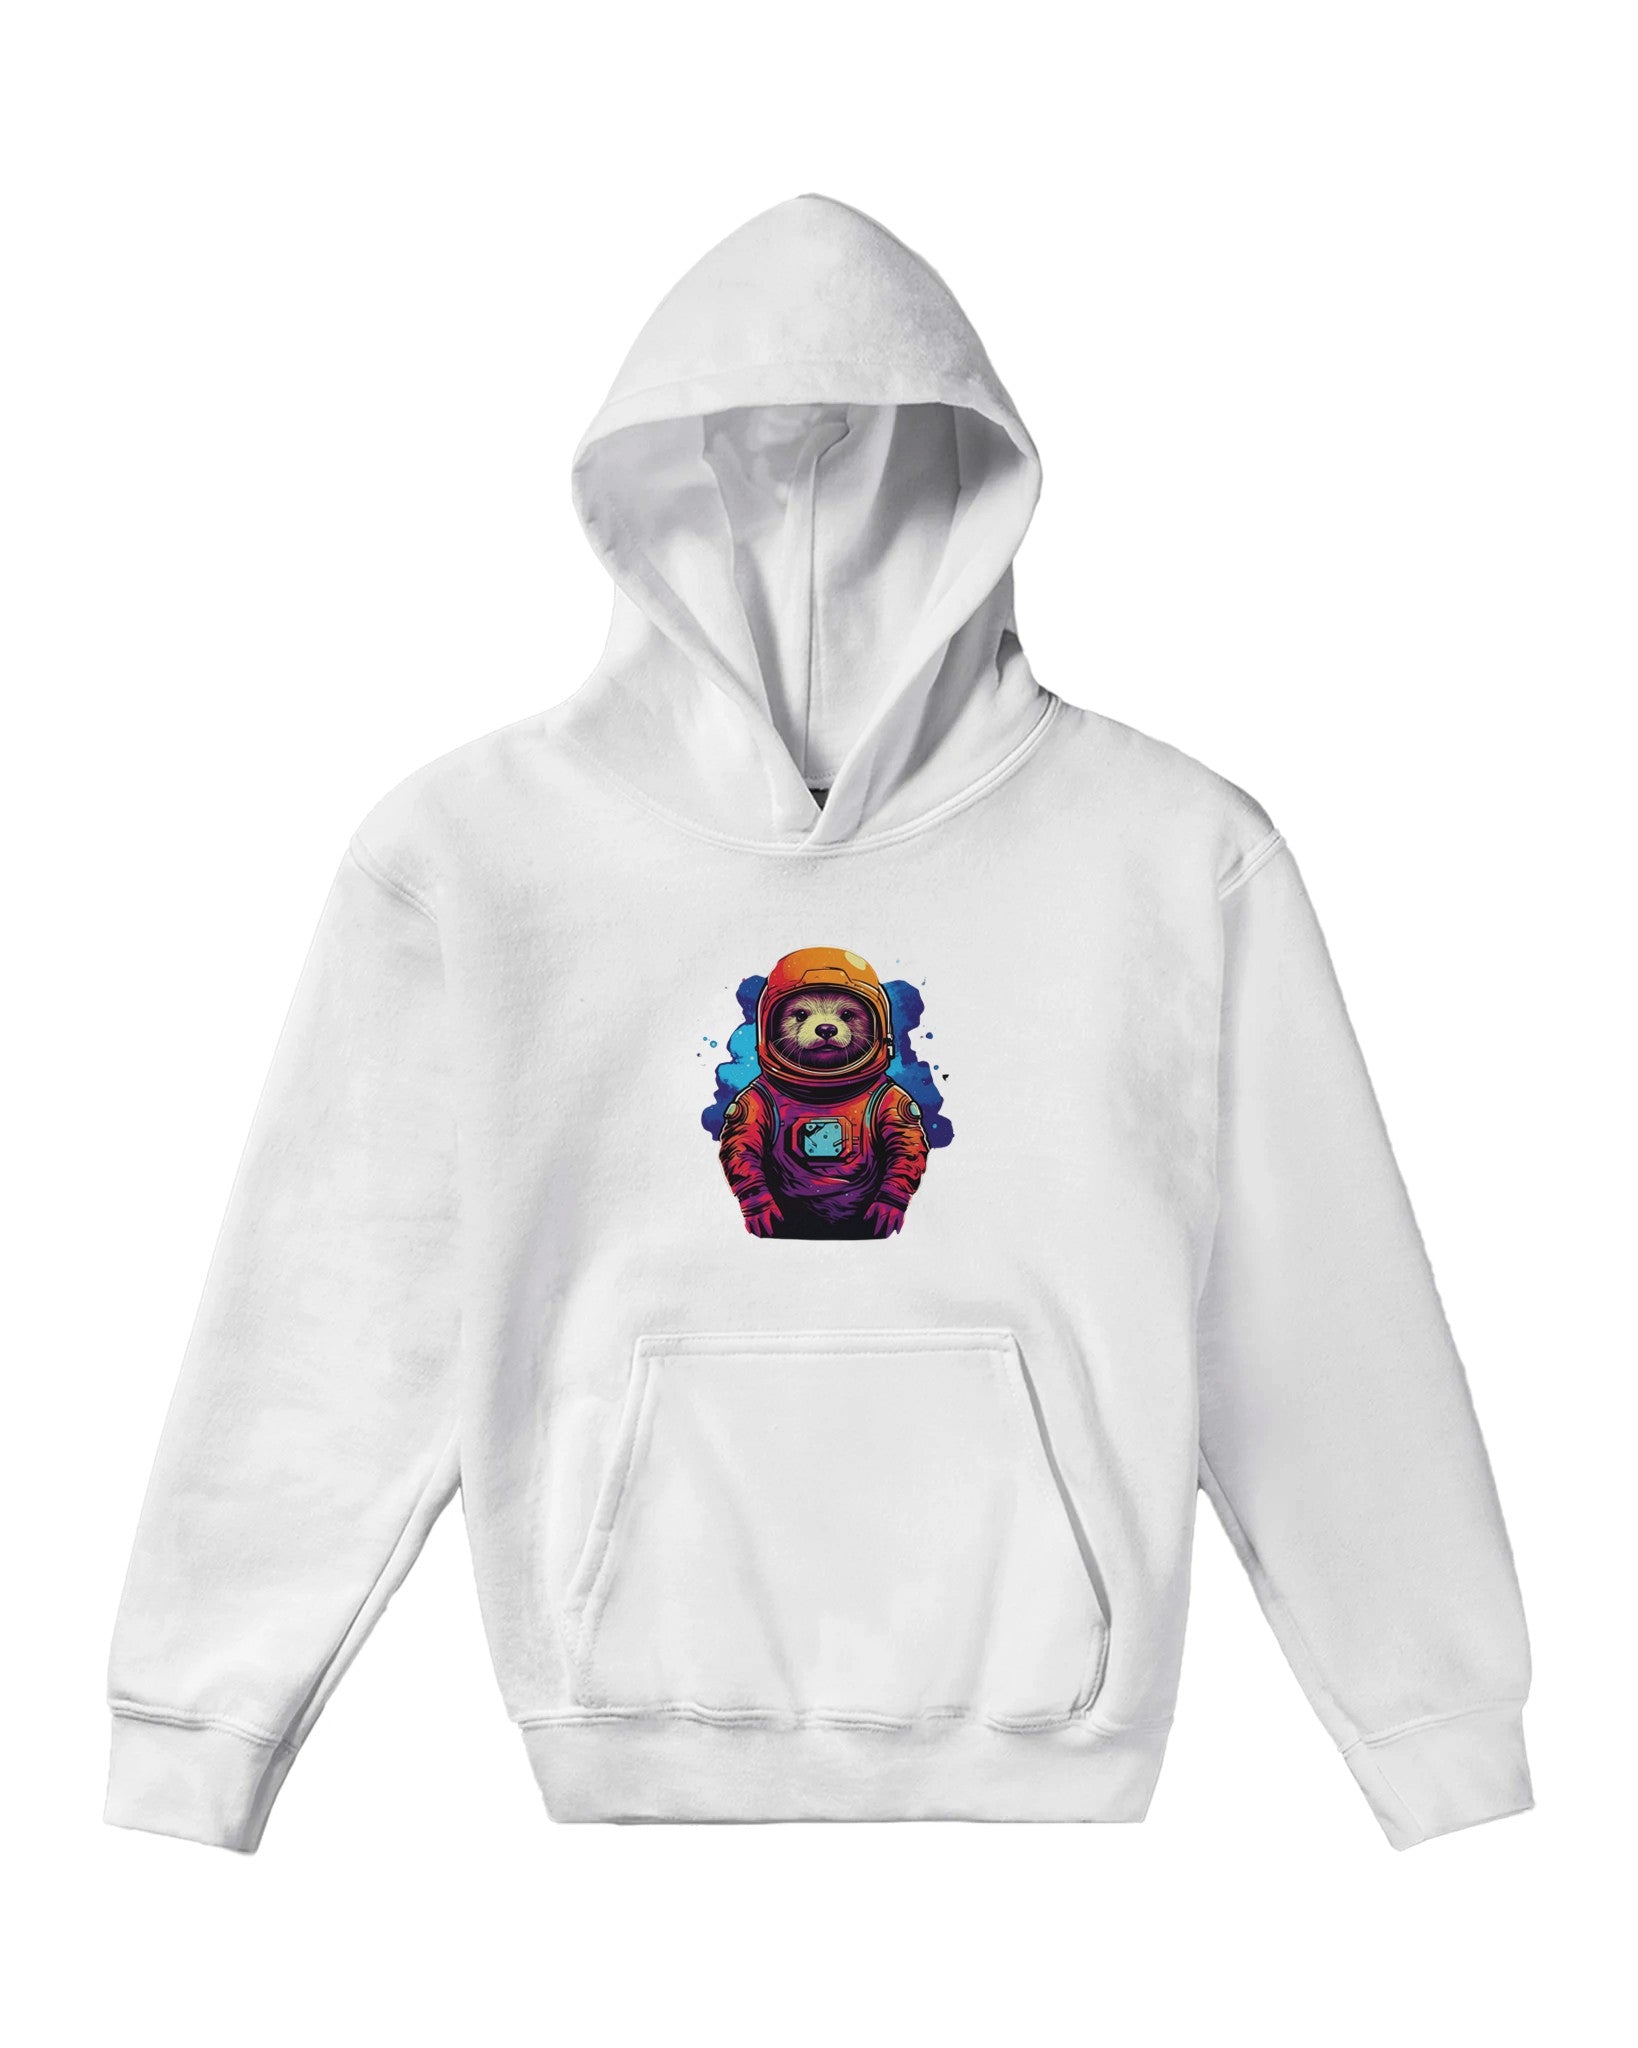 Spacefarer Sloth Odyssey Kids Pullover Hoodie - Optimalprint